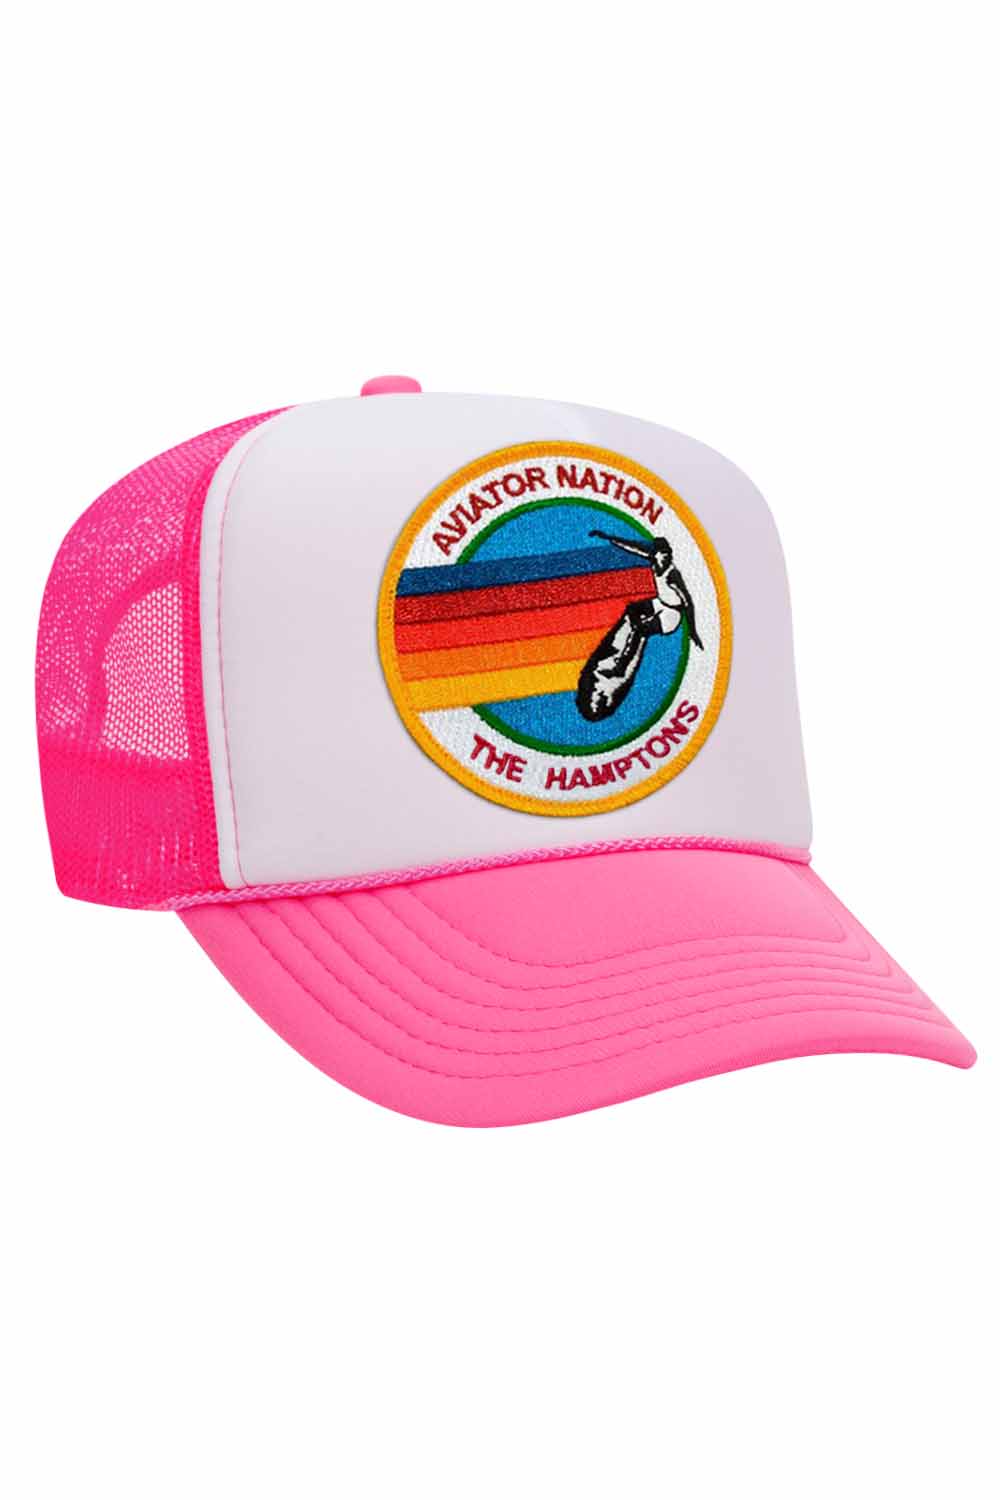 AVIATOR NATION HAMPTONS TRUCKER HAT HATS Aviator Nation NEON PINK // WHITE // NEON PINK 